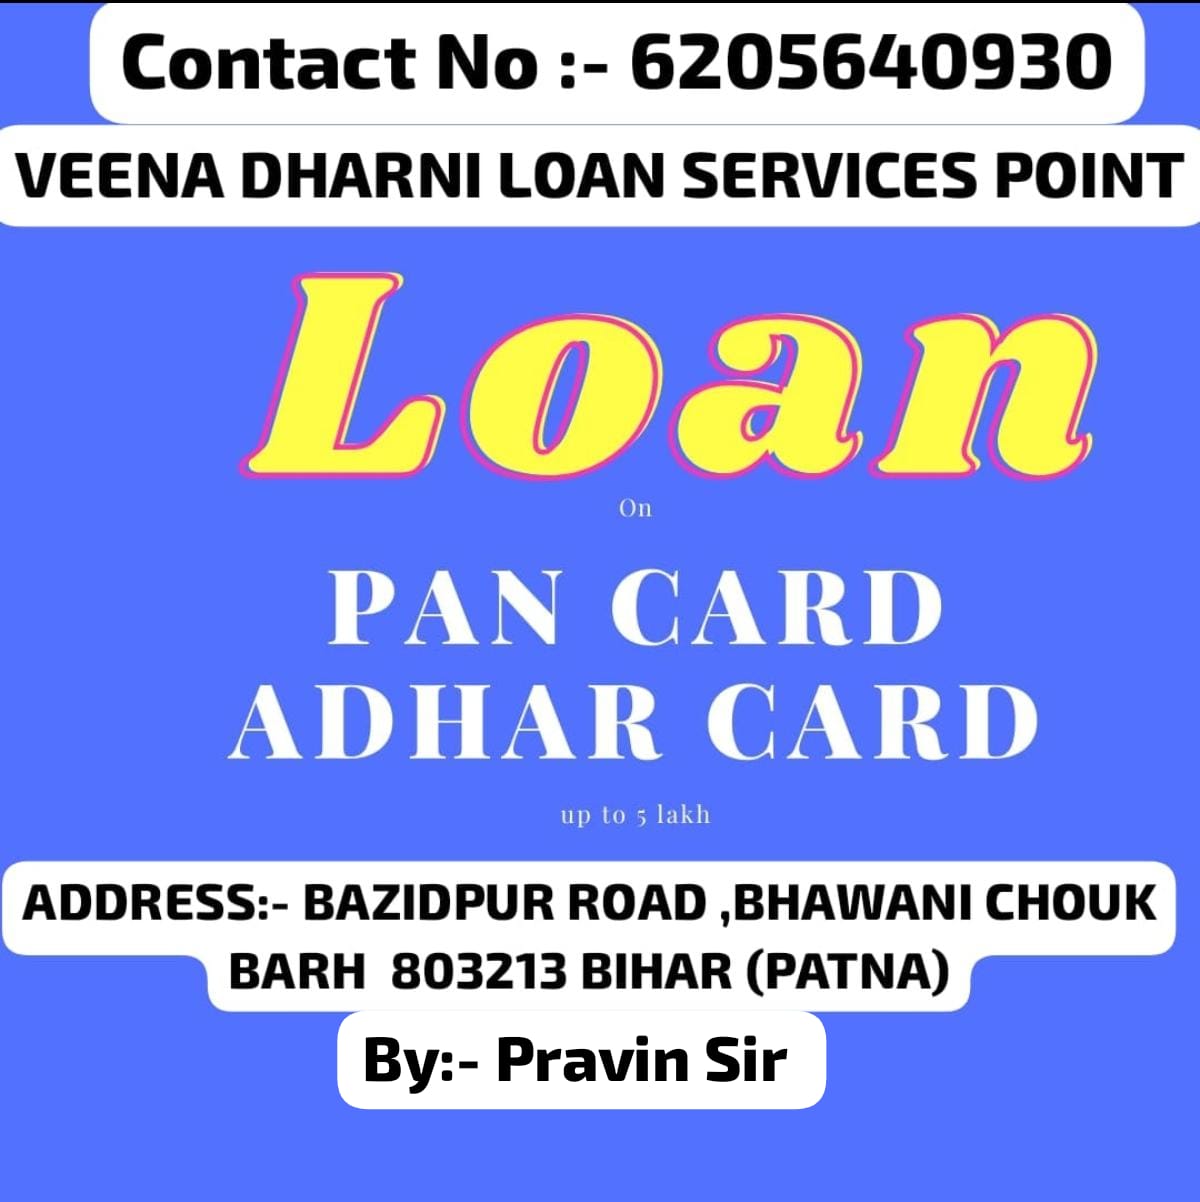 Pen Card And Aadhar Card Kaise Loan le